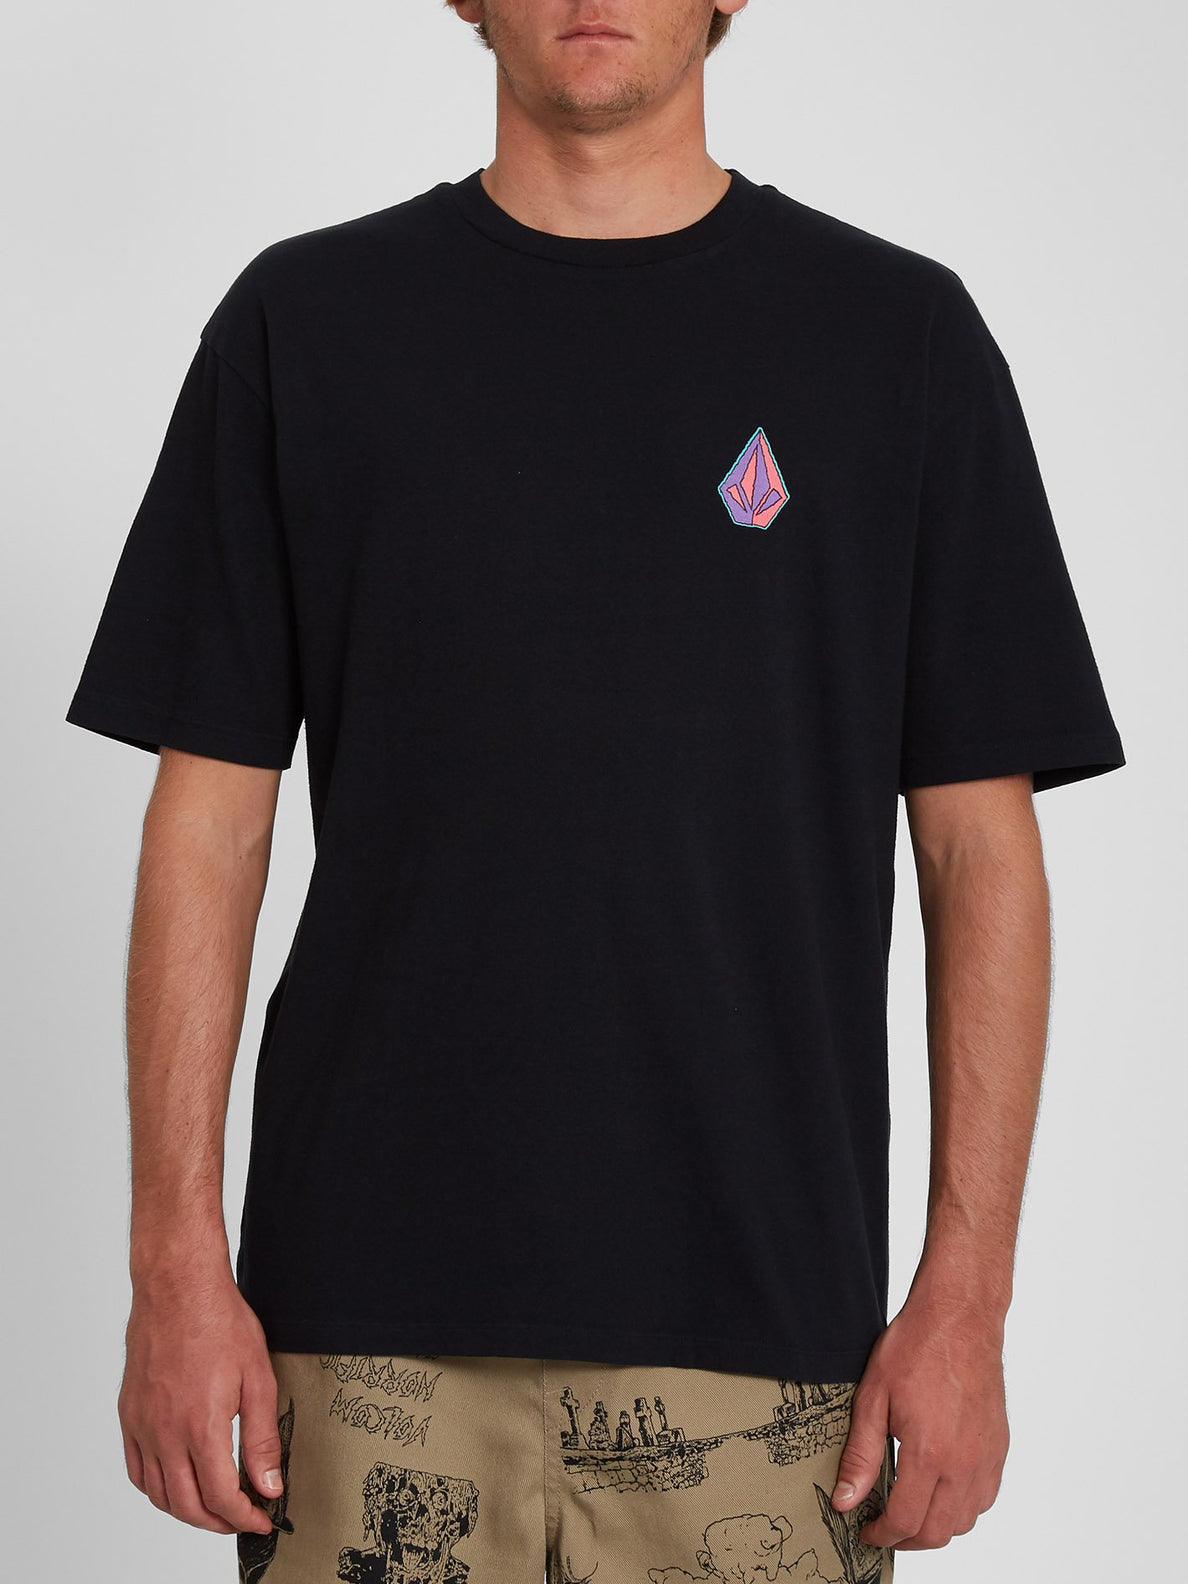 Spacegoolz T-shirt - BLACK (A4342005_BLK) [1]